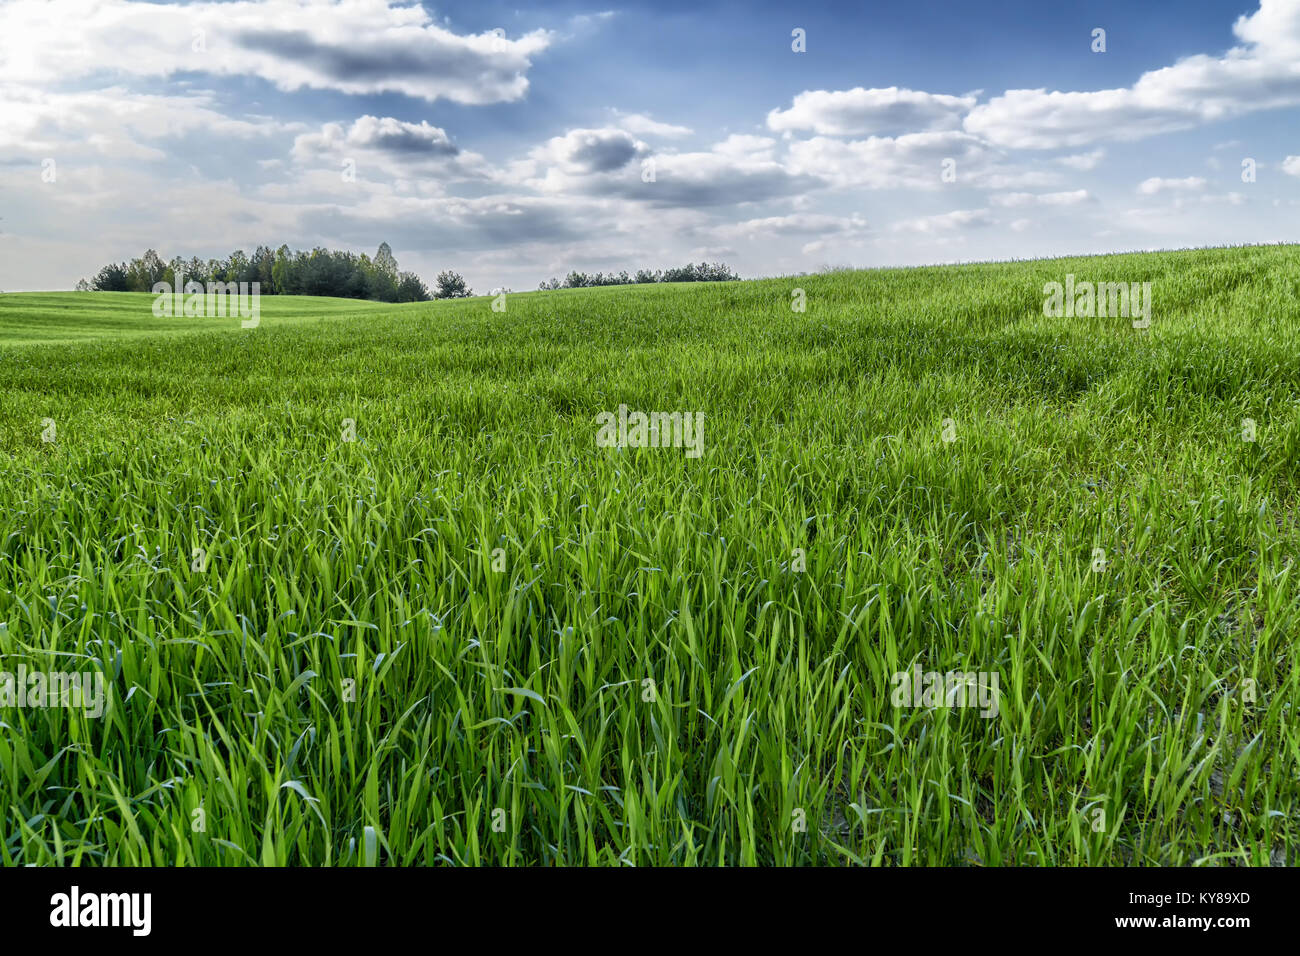 Grüne Gras Feld in hügeligem Gelände und der strahlend blaue Himmel mit Wolken. Gruppe od Bäume am Horizont. Feder natürlichen Hintergrund. Stockfoto